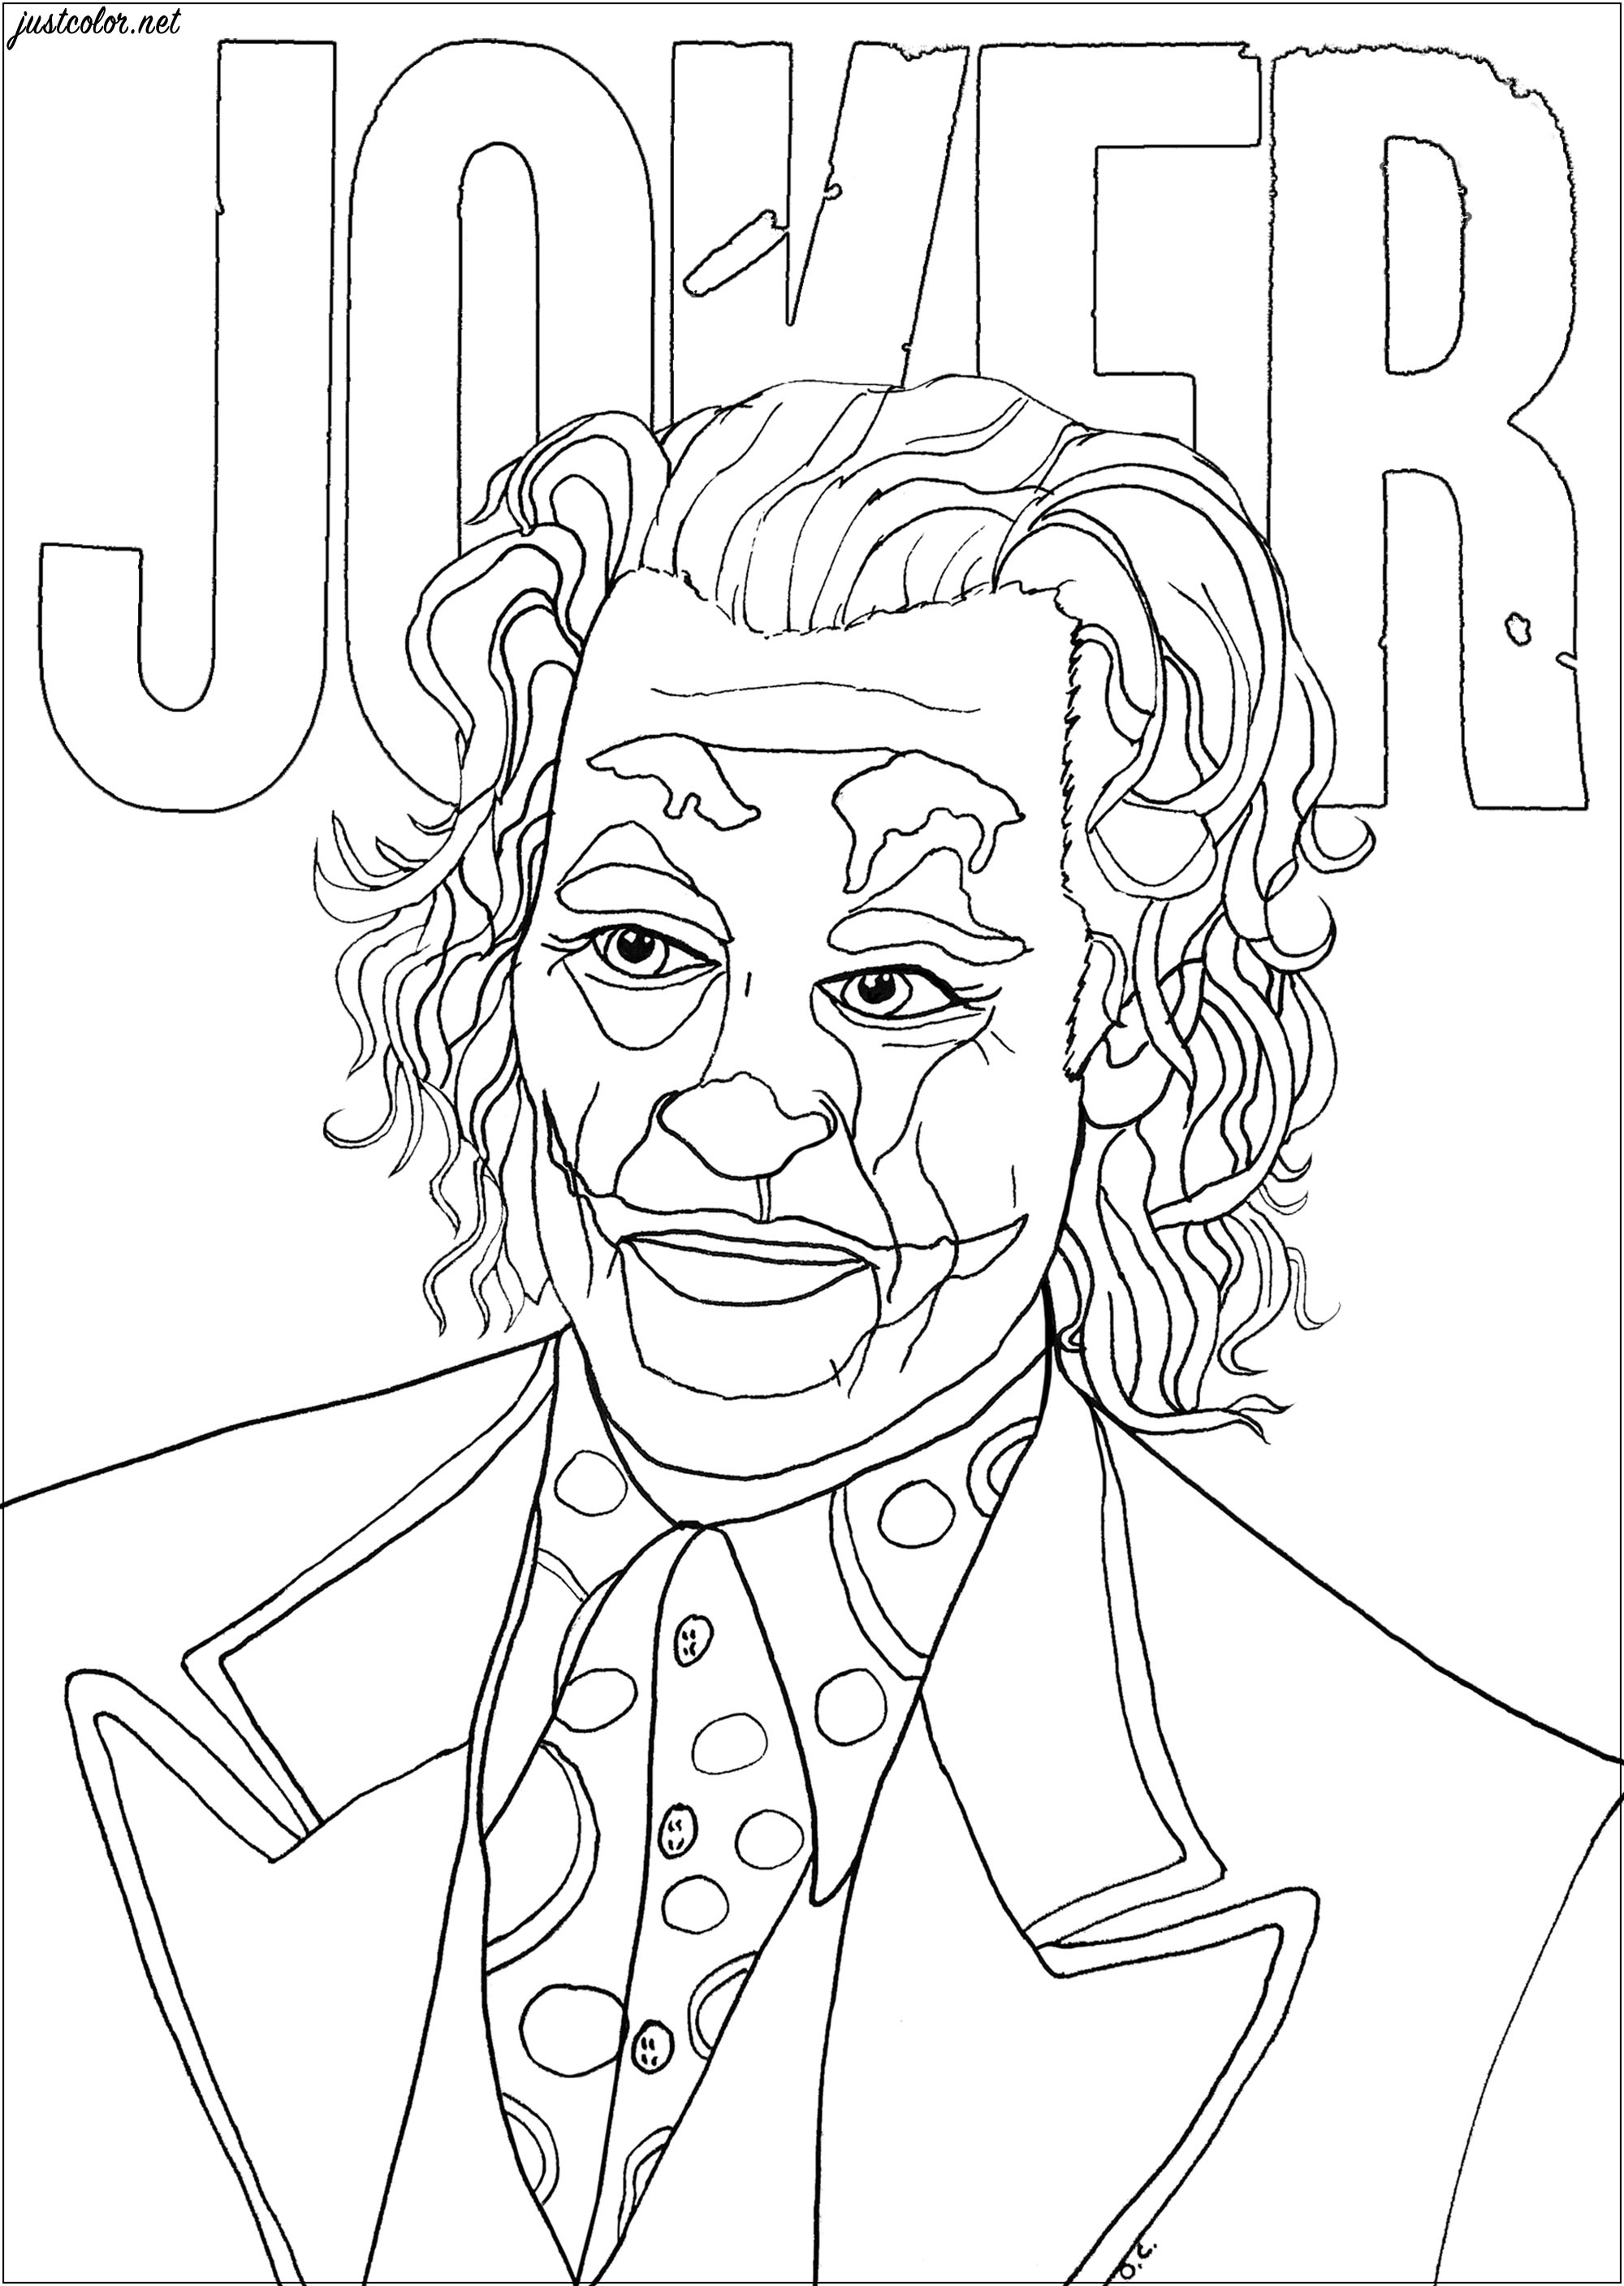 Página para colorear inspirada en el Joker, interpretado por Joaquin Phoenix en la película de 2019 dirigida por Todd Phillips. Joker es considerado como el principal supervillano de DC Comics.